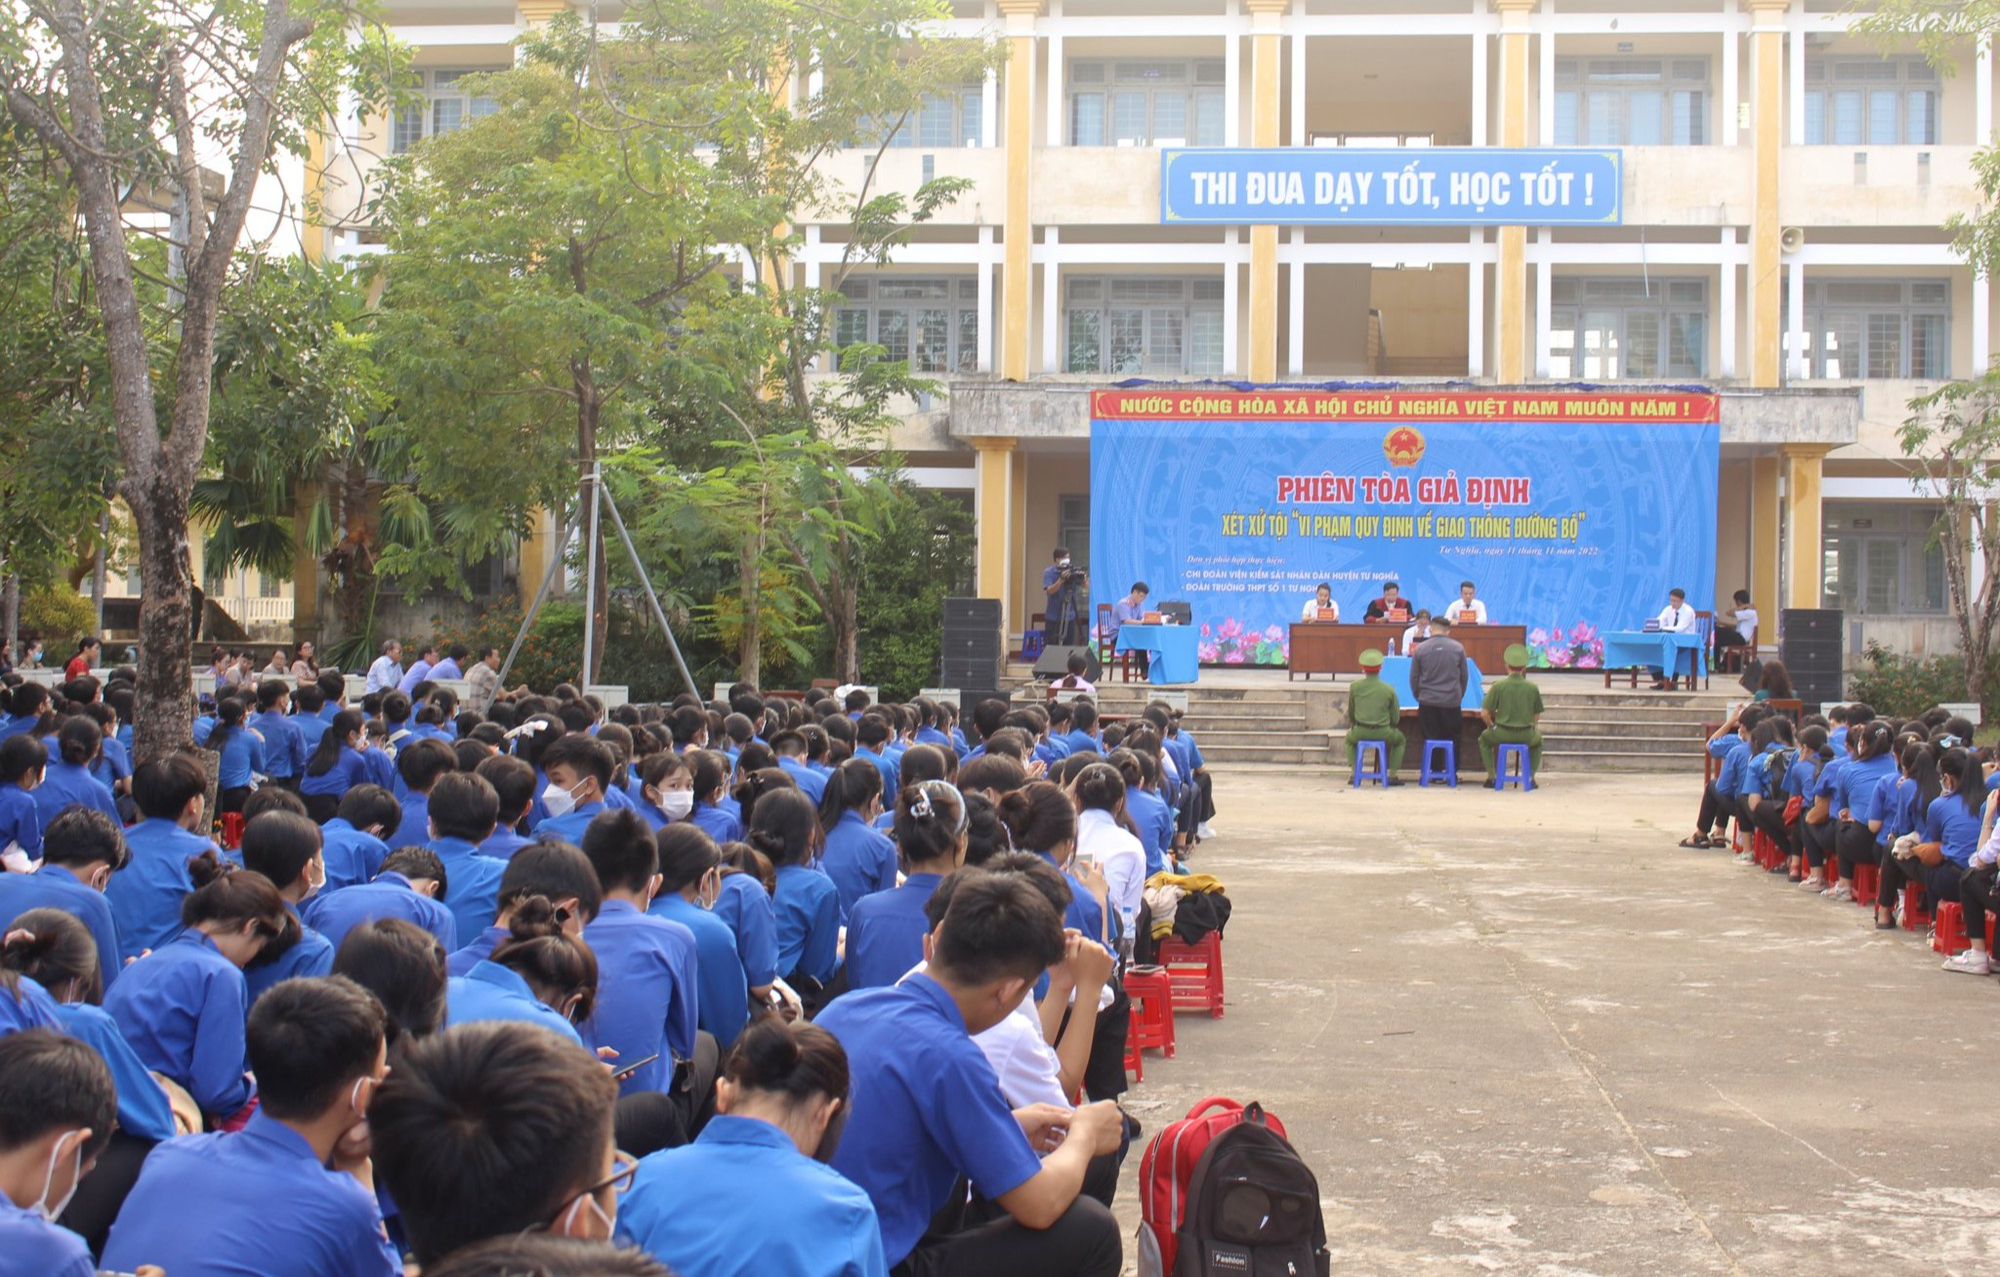 Giáo dục pháp luật ATGT cho học sinh qua phiên tòa giả định ở Quảng Ngãi - Ảnh 1.